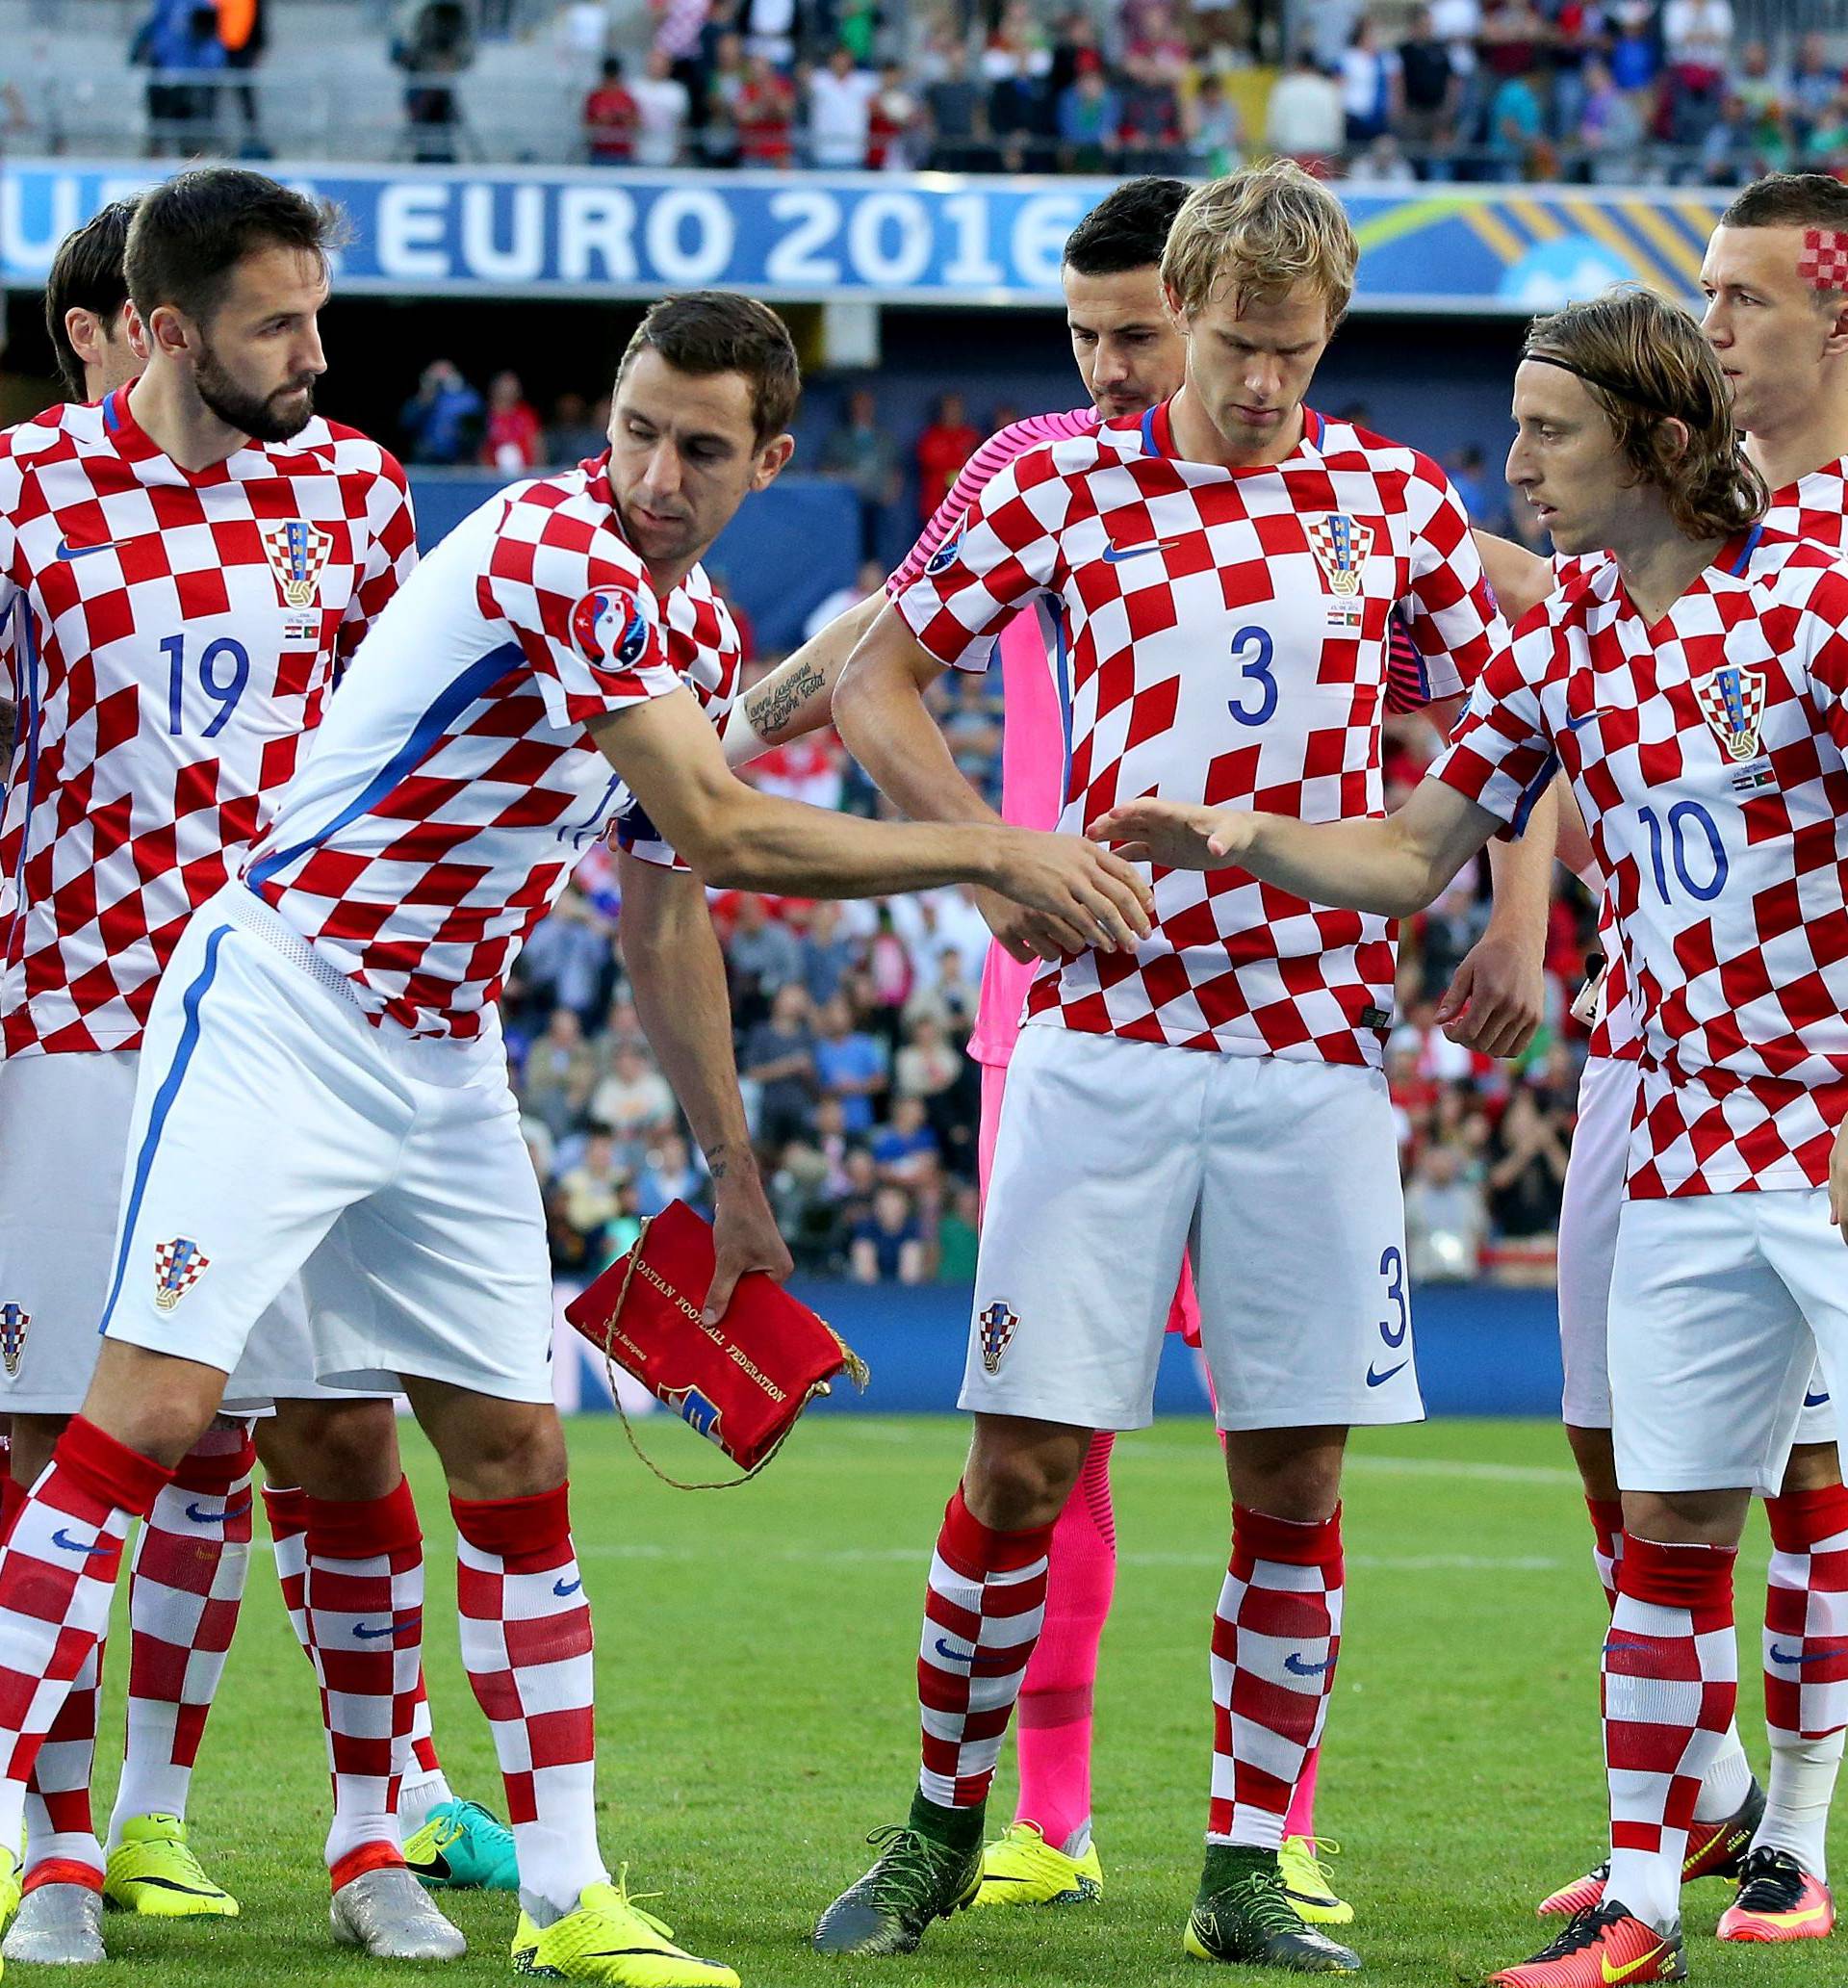 EU želi mijenjati grb na dresu hrvatske nogometne repke?!